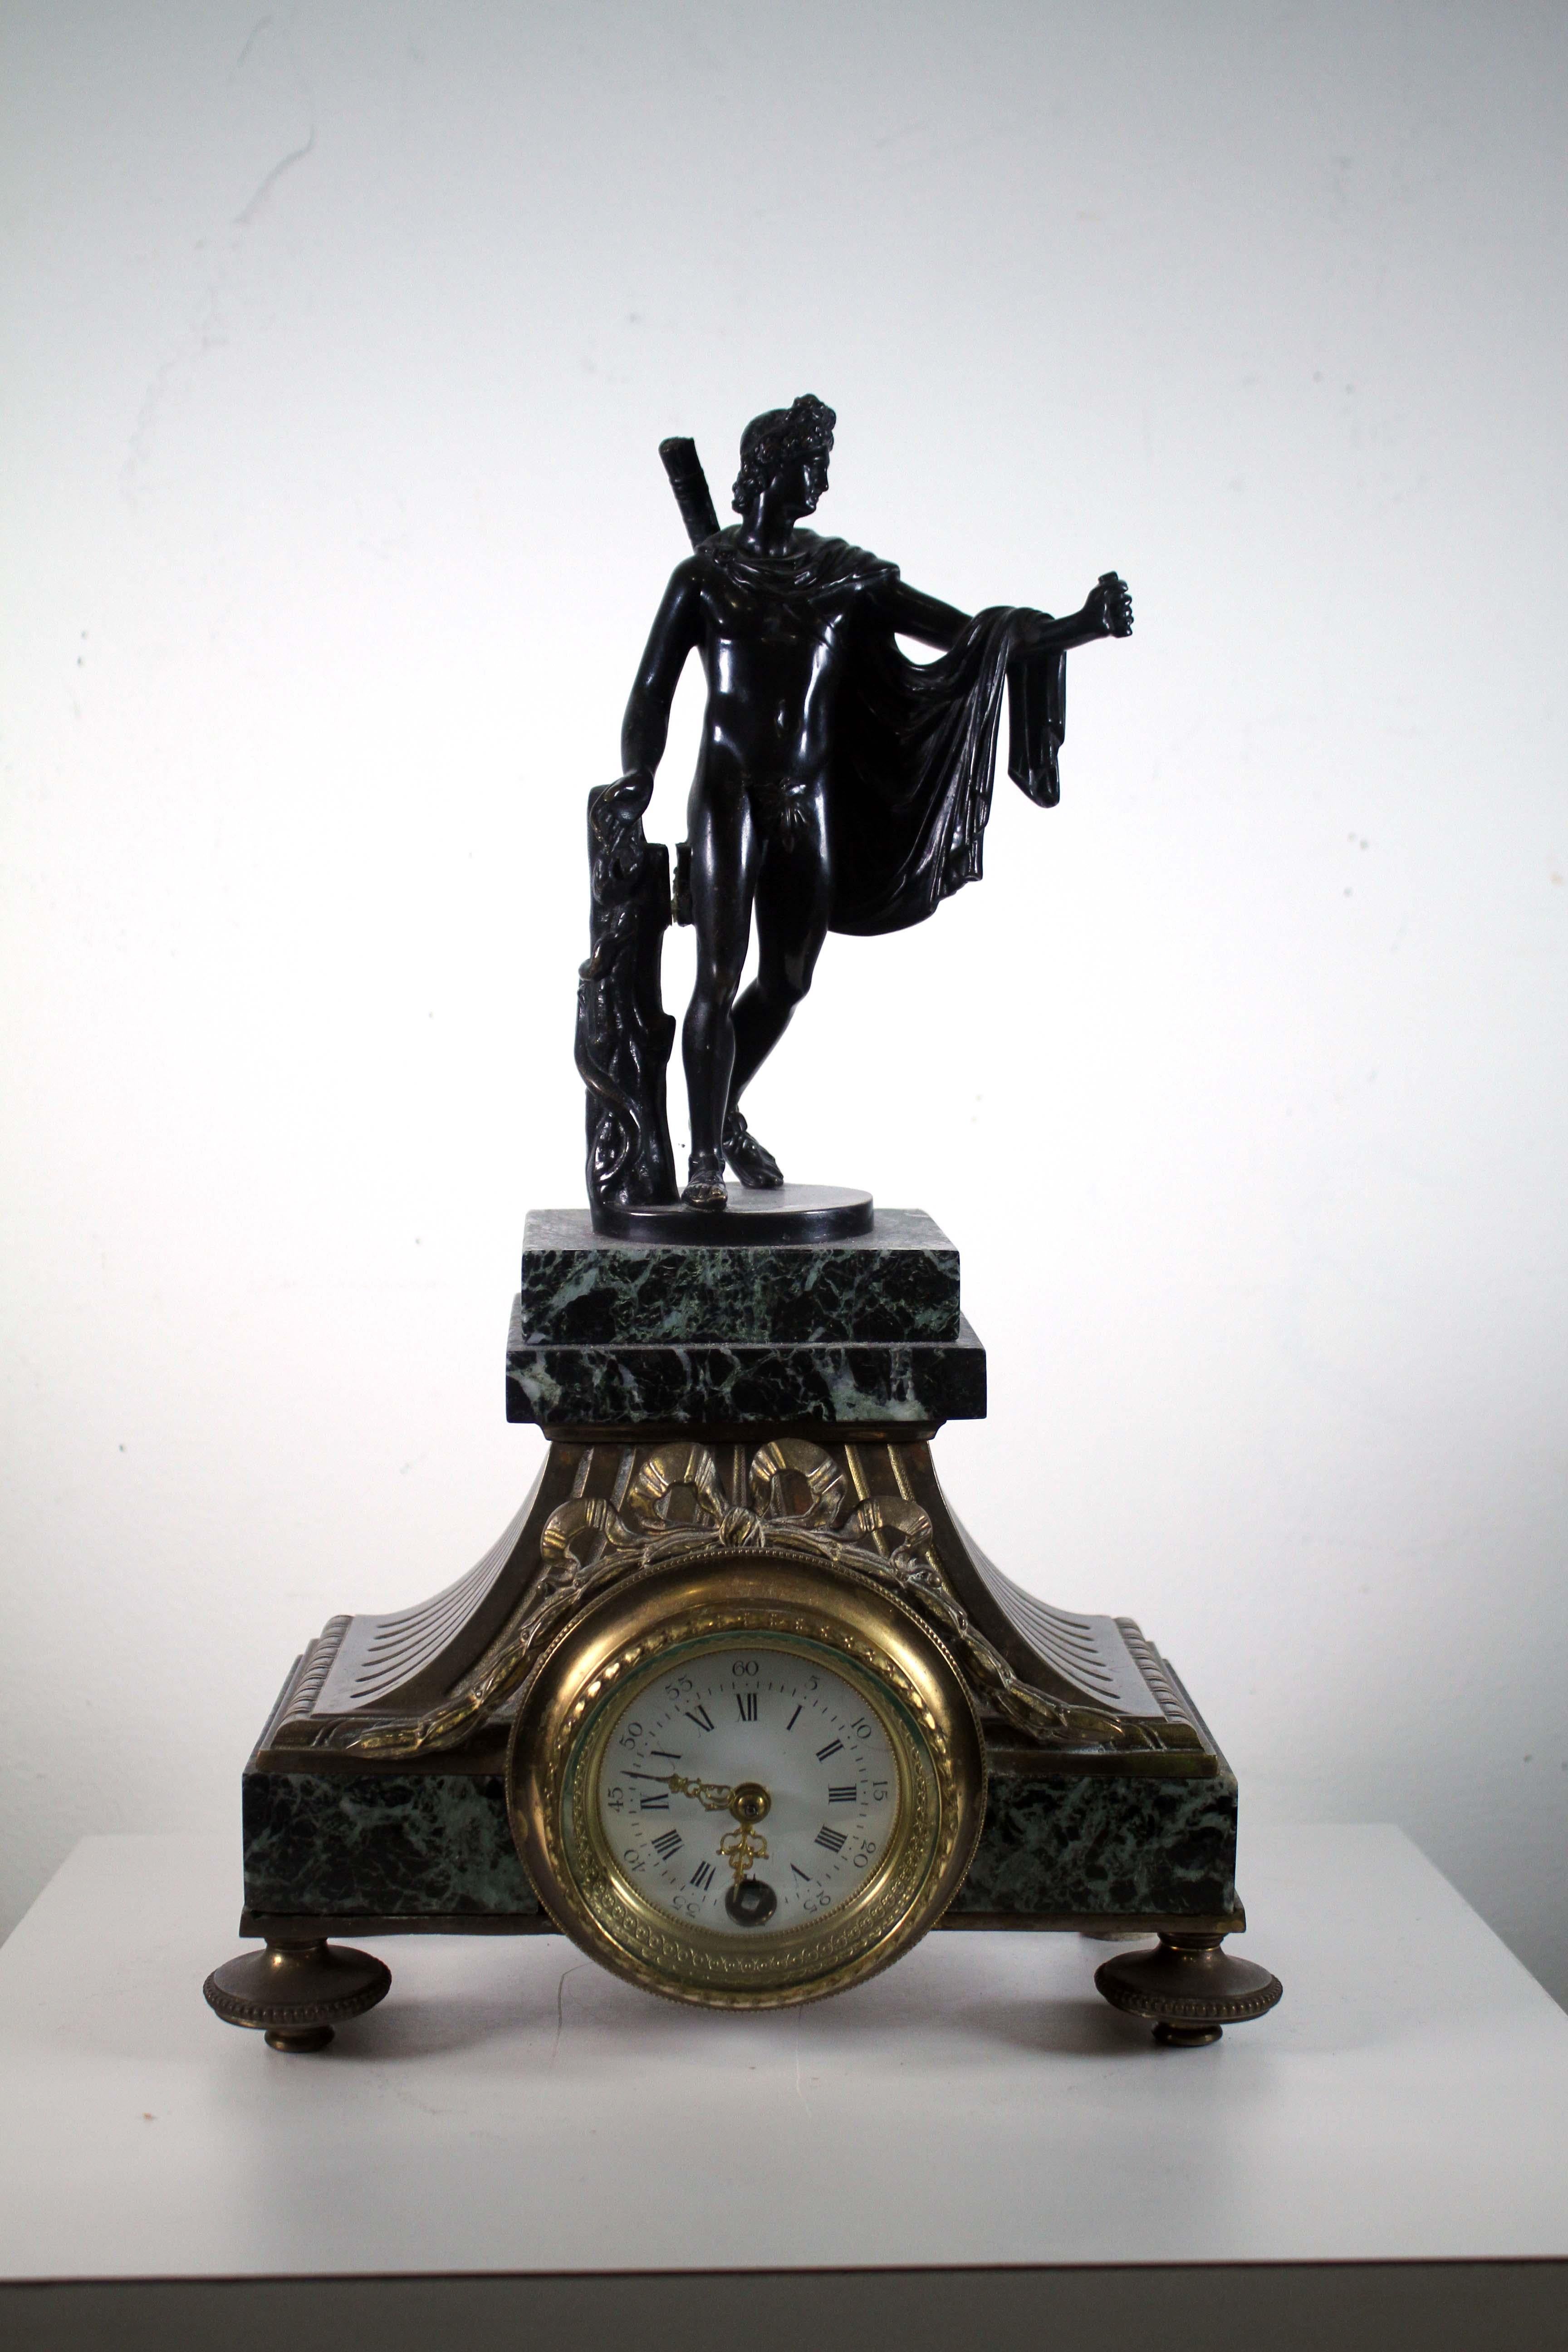 Il s'agit d'une magnifique horloge suisse ancienne de Lenzkirich. Elle est dotée d'un magnifique boîtier en bronze ferreux et d'une figure d'Apollo sur le cadran. Le cadran de l'horloge est orné de délicats chiffres romains noirs et d'une paire